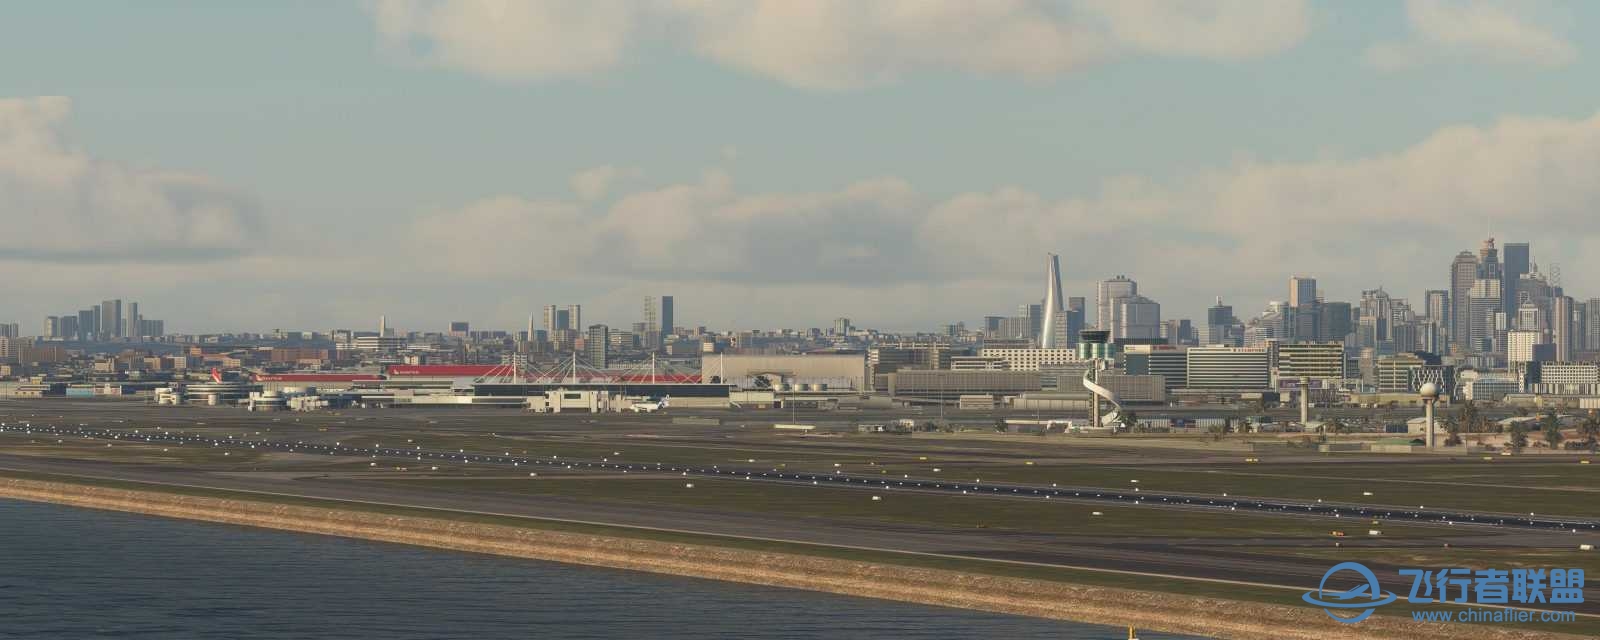 FlyTampa悉尼机场预览和加入Orbx合作计划-2115 